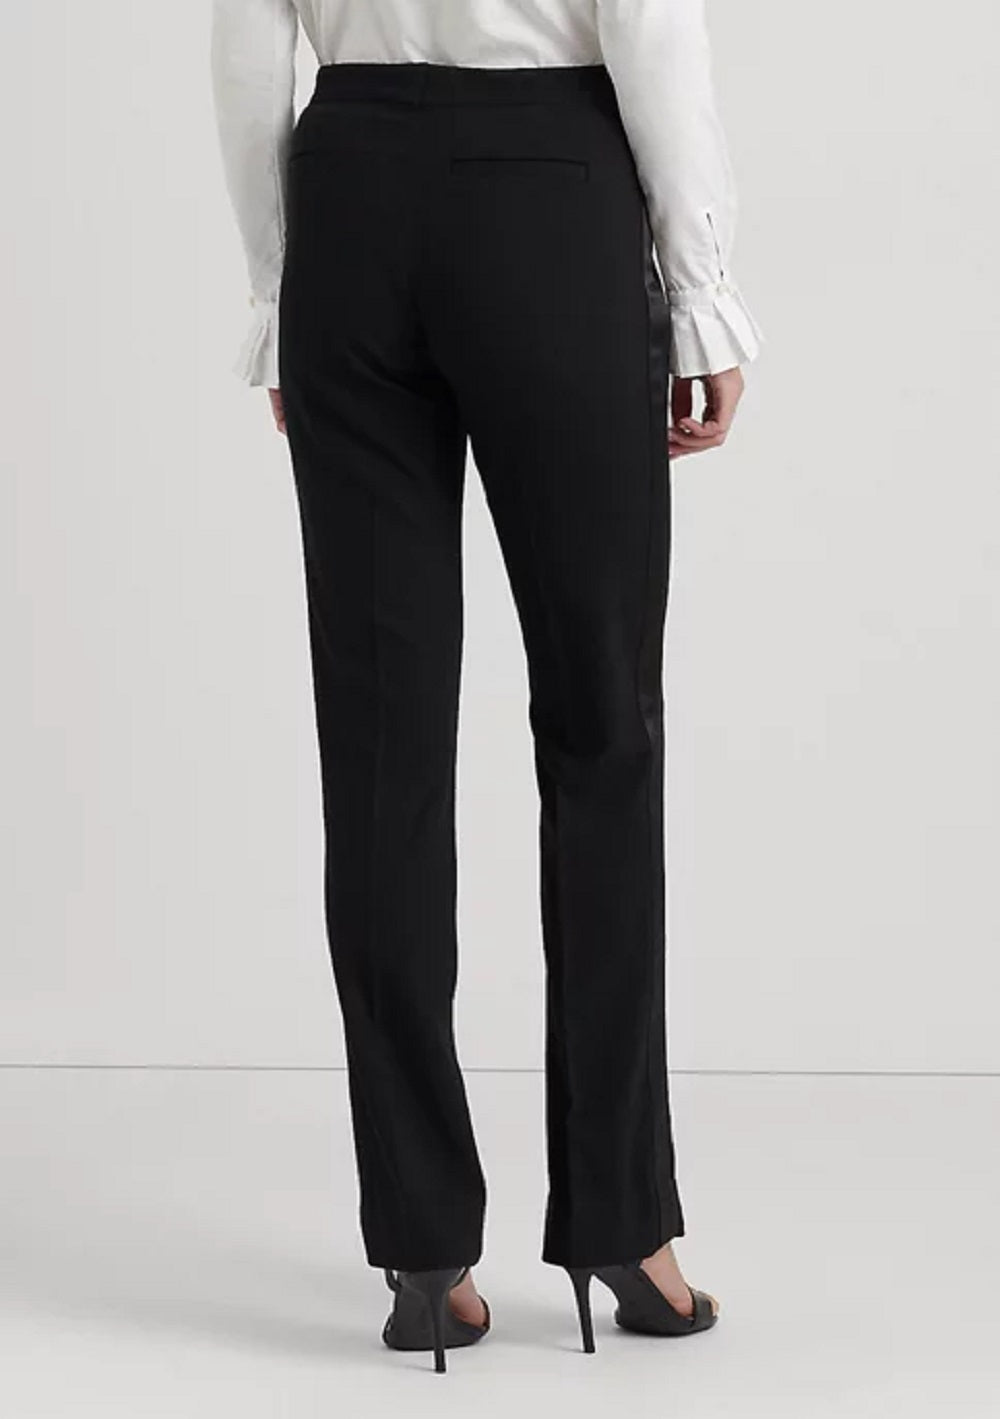 Ralph Lauren Women's Side Stripe Wool Crepe Pants Black Size 4